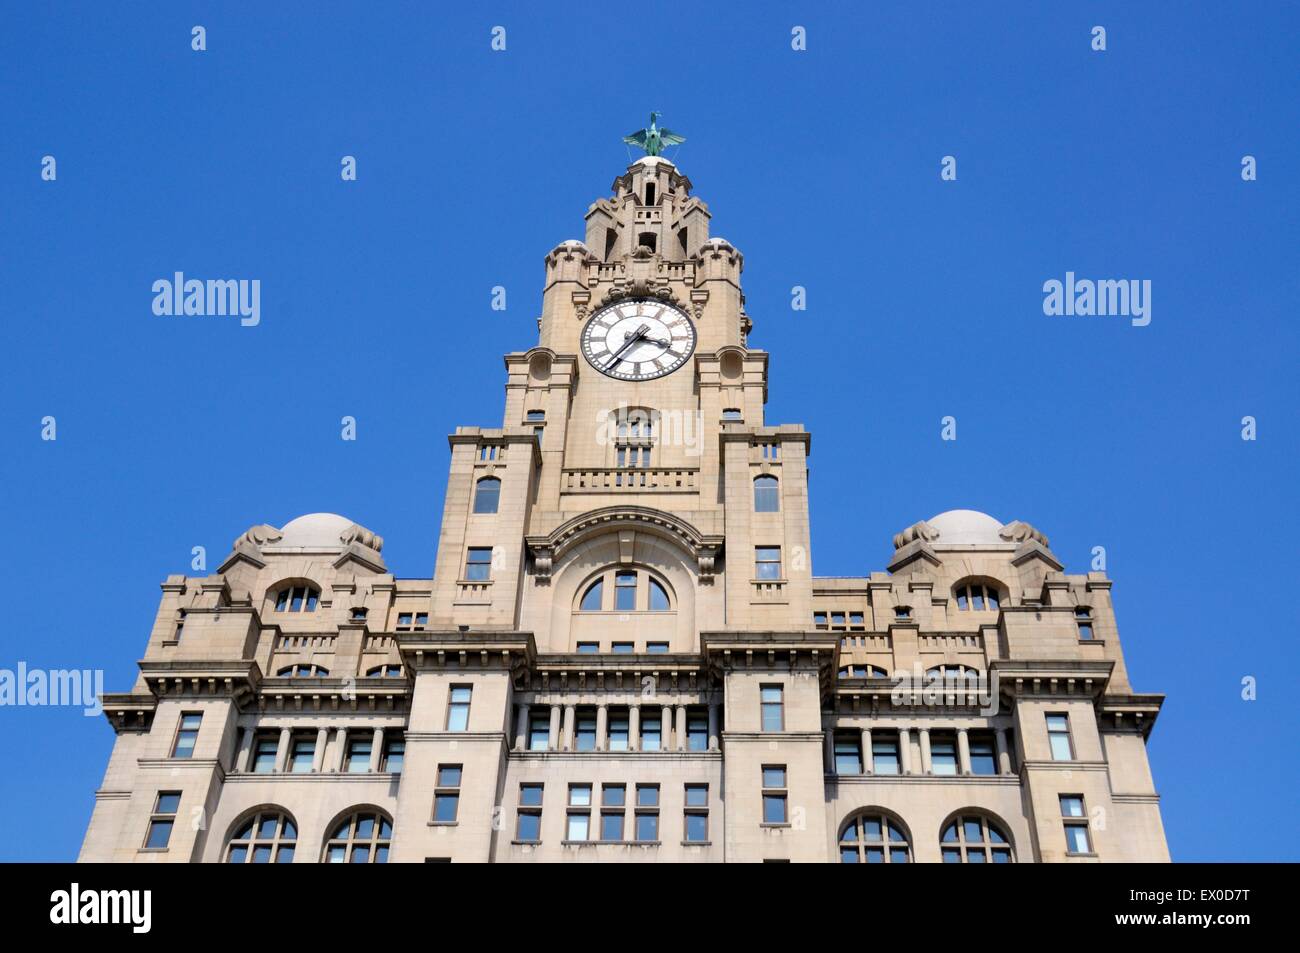 Le Royal Liver Building tour de l'horloge et d'oiseaux du foie à Pier Head, Liverpool, Merseyside, England, UK, Europe de l'Ouest. Banque D'Images